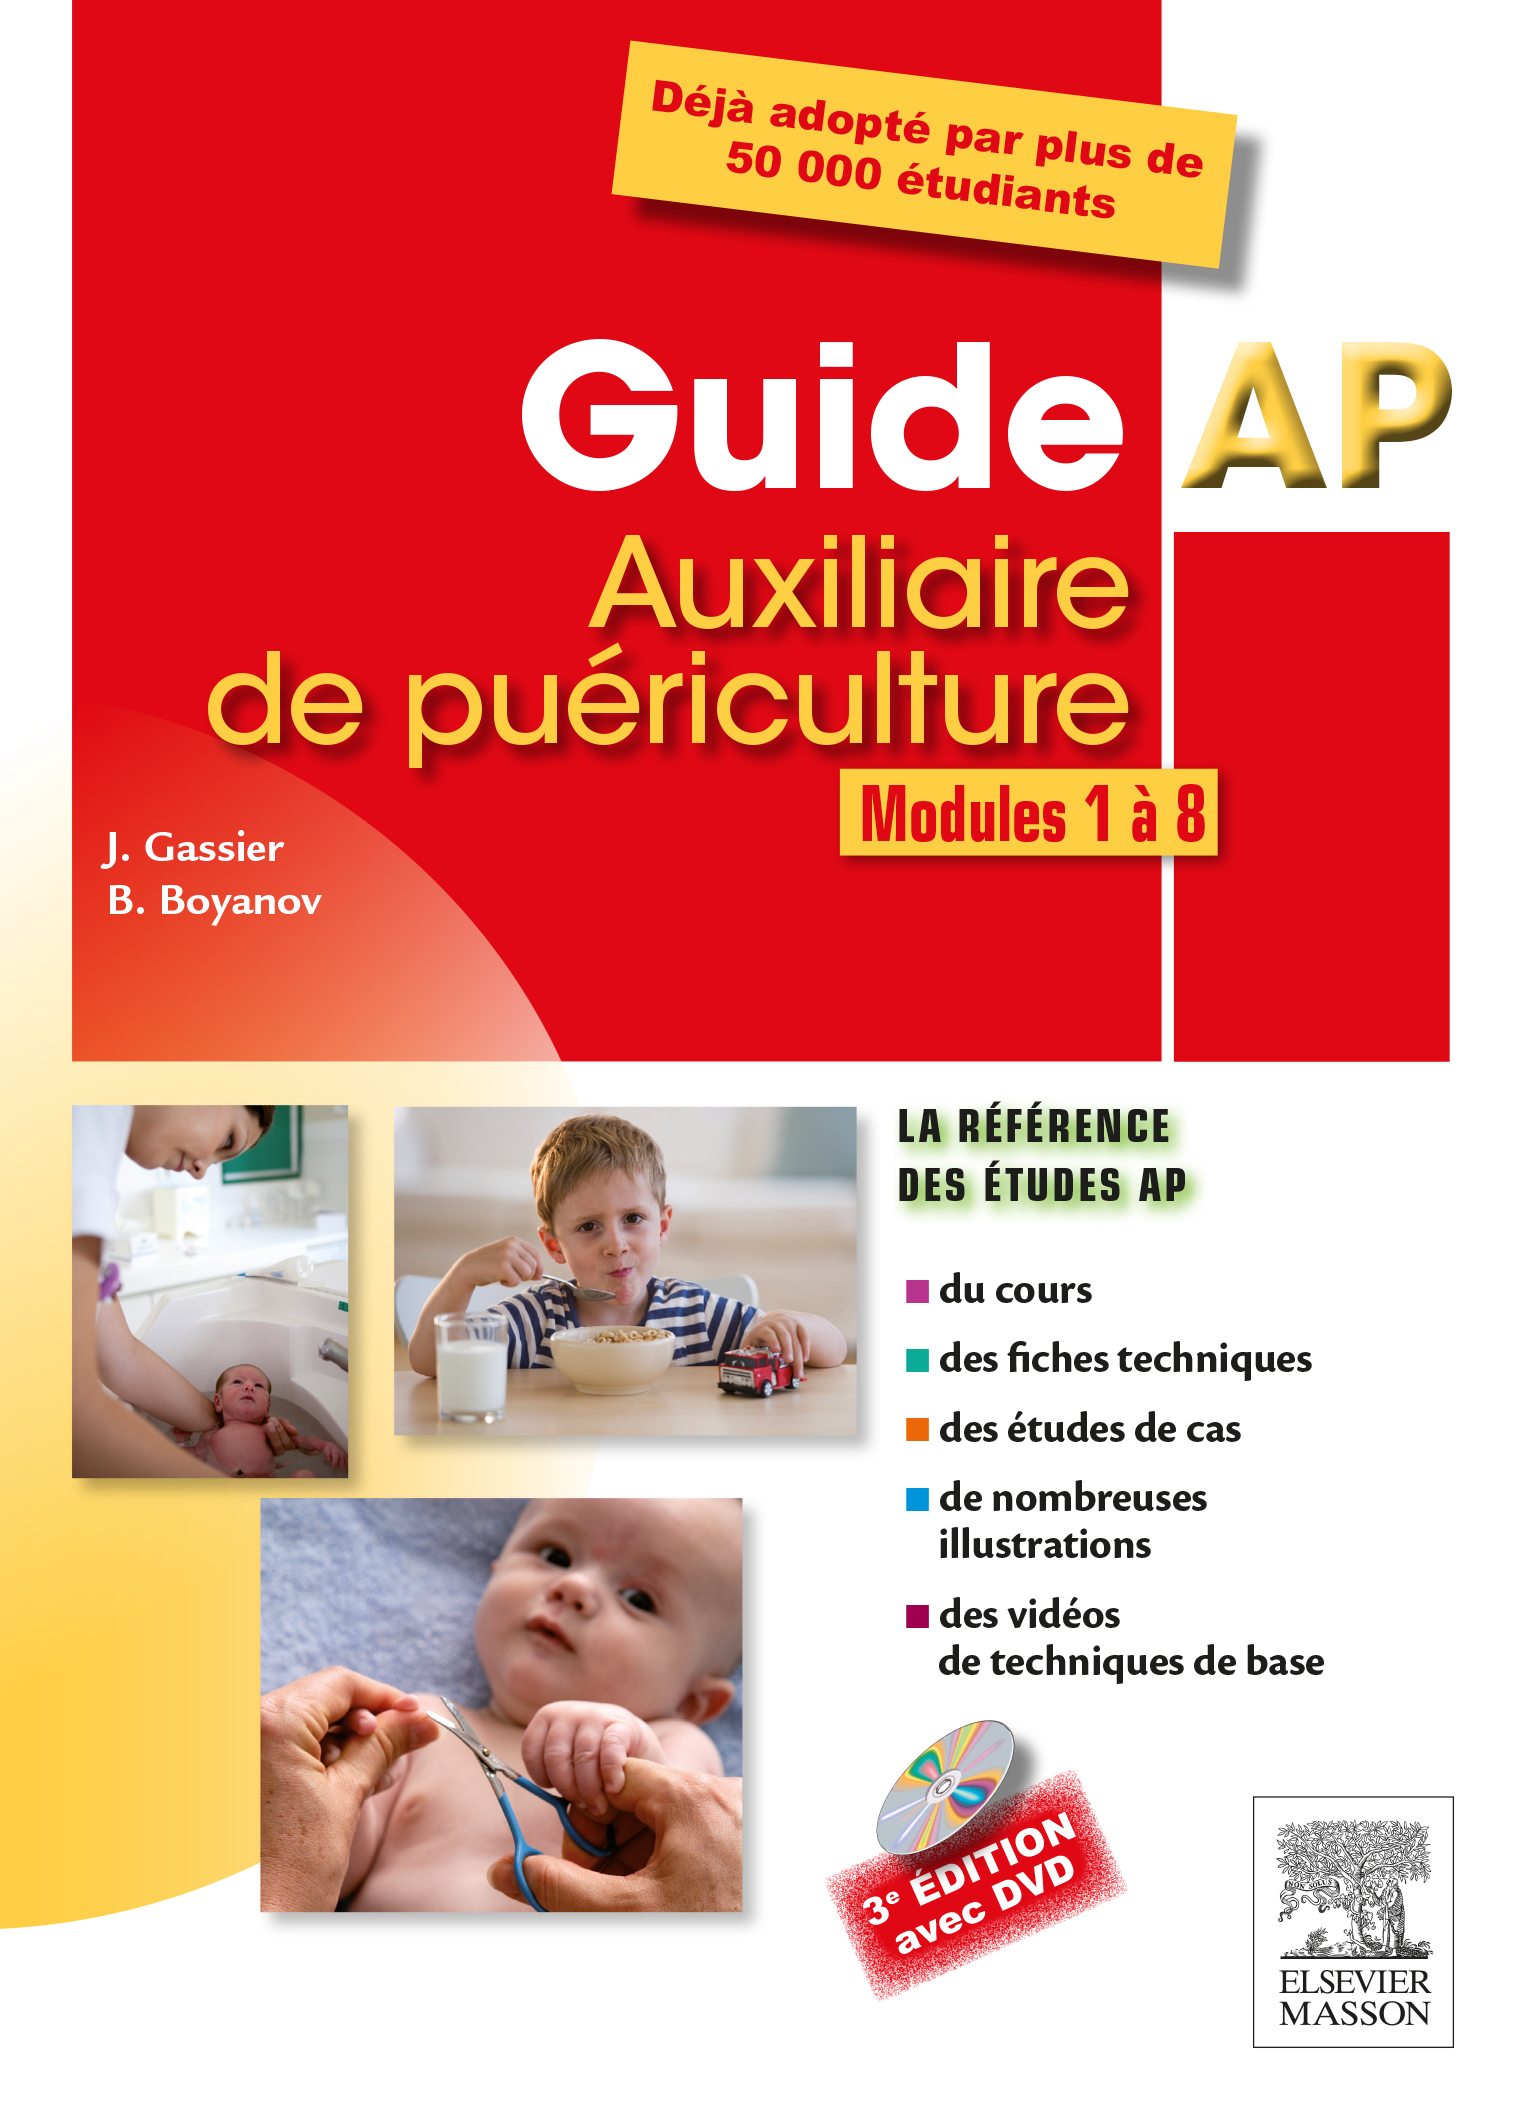 Guide AP - Auxiliaire de puriculture - Jacqueline GASSIER, Bruno BOYANOV - ELSEVIER / MASSON - 